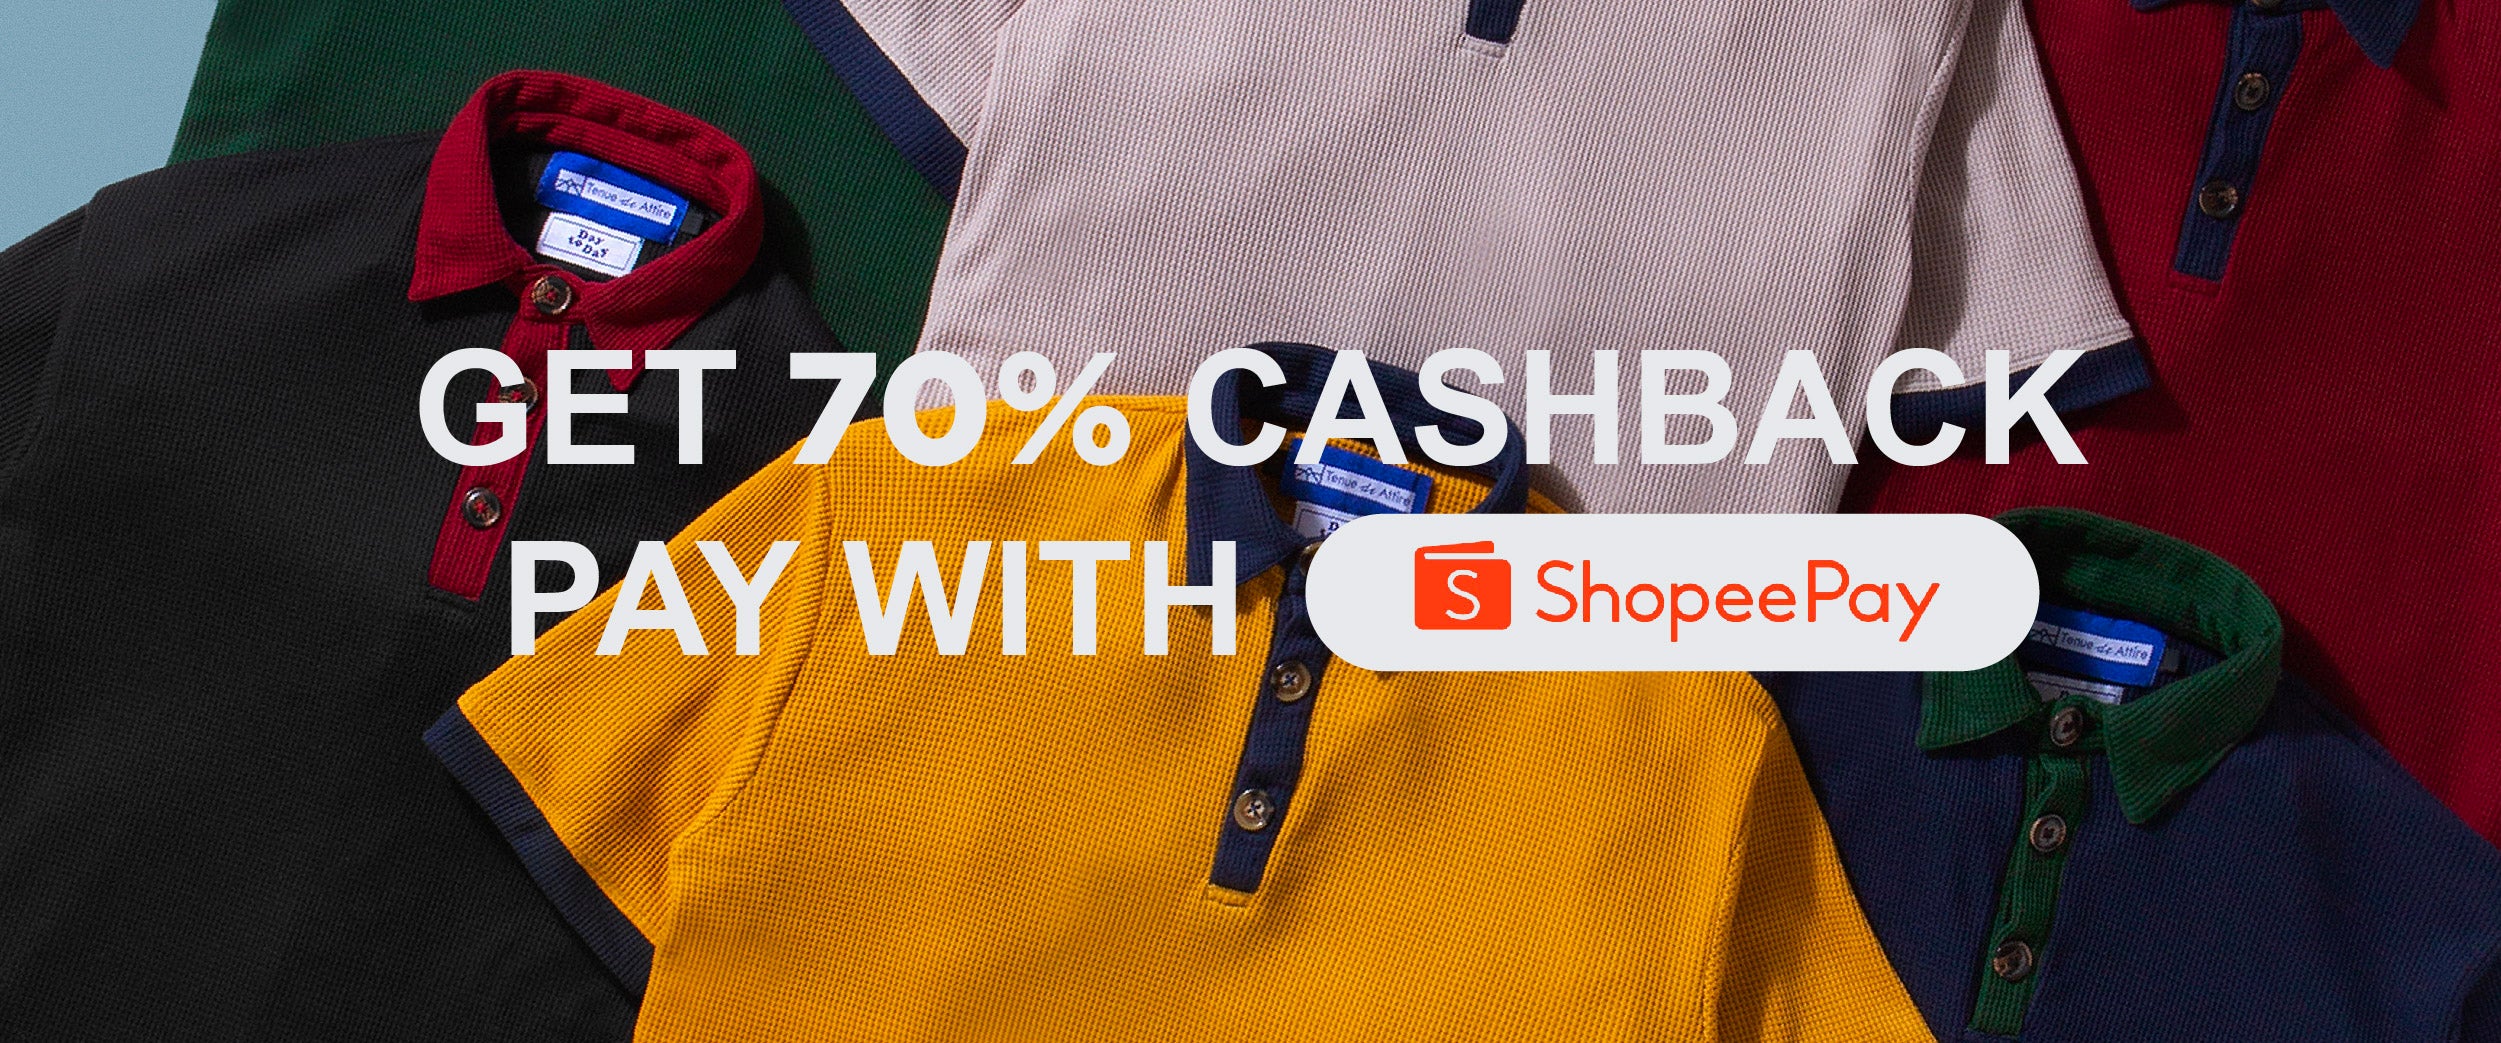 ShopeePay Cashback 70% s/d 15RB Pembayaran via Website